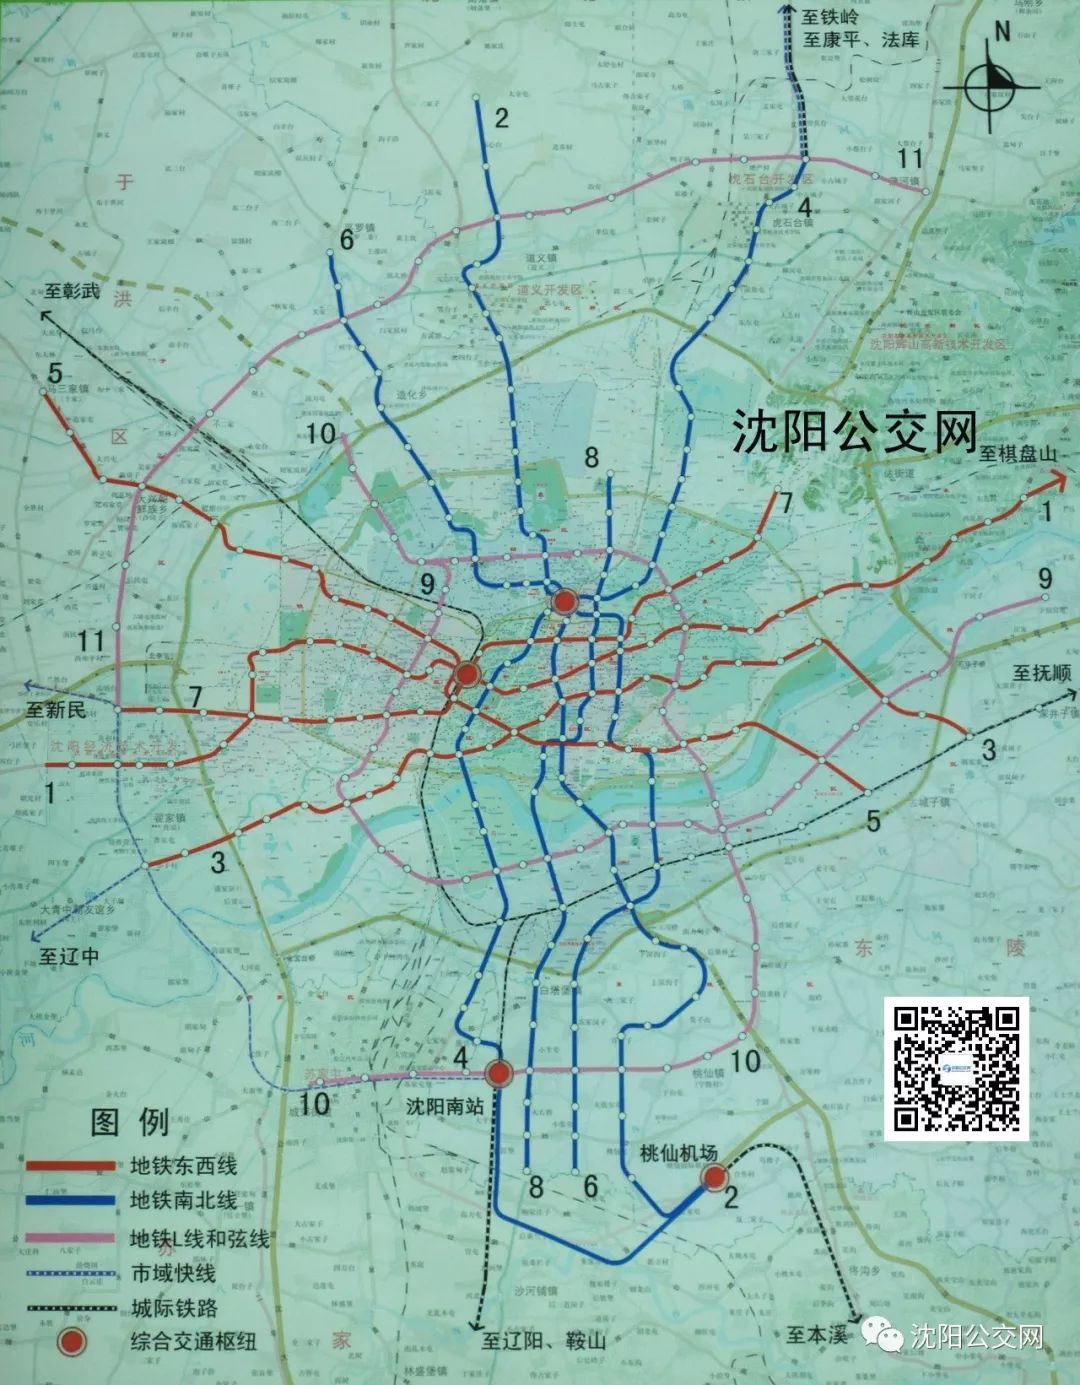 2010年,沈阳市基本确定了11条线路的快速轨道交通建设规划,并上报